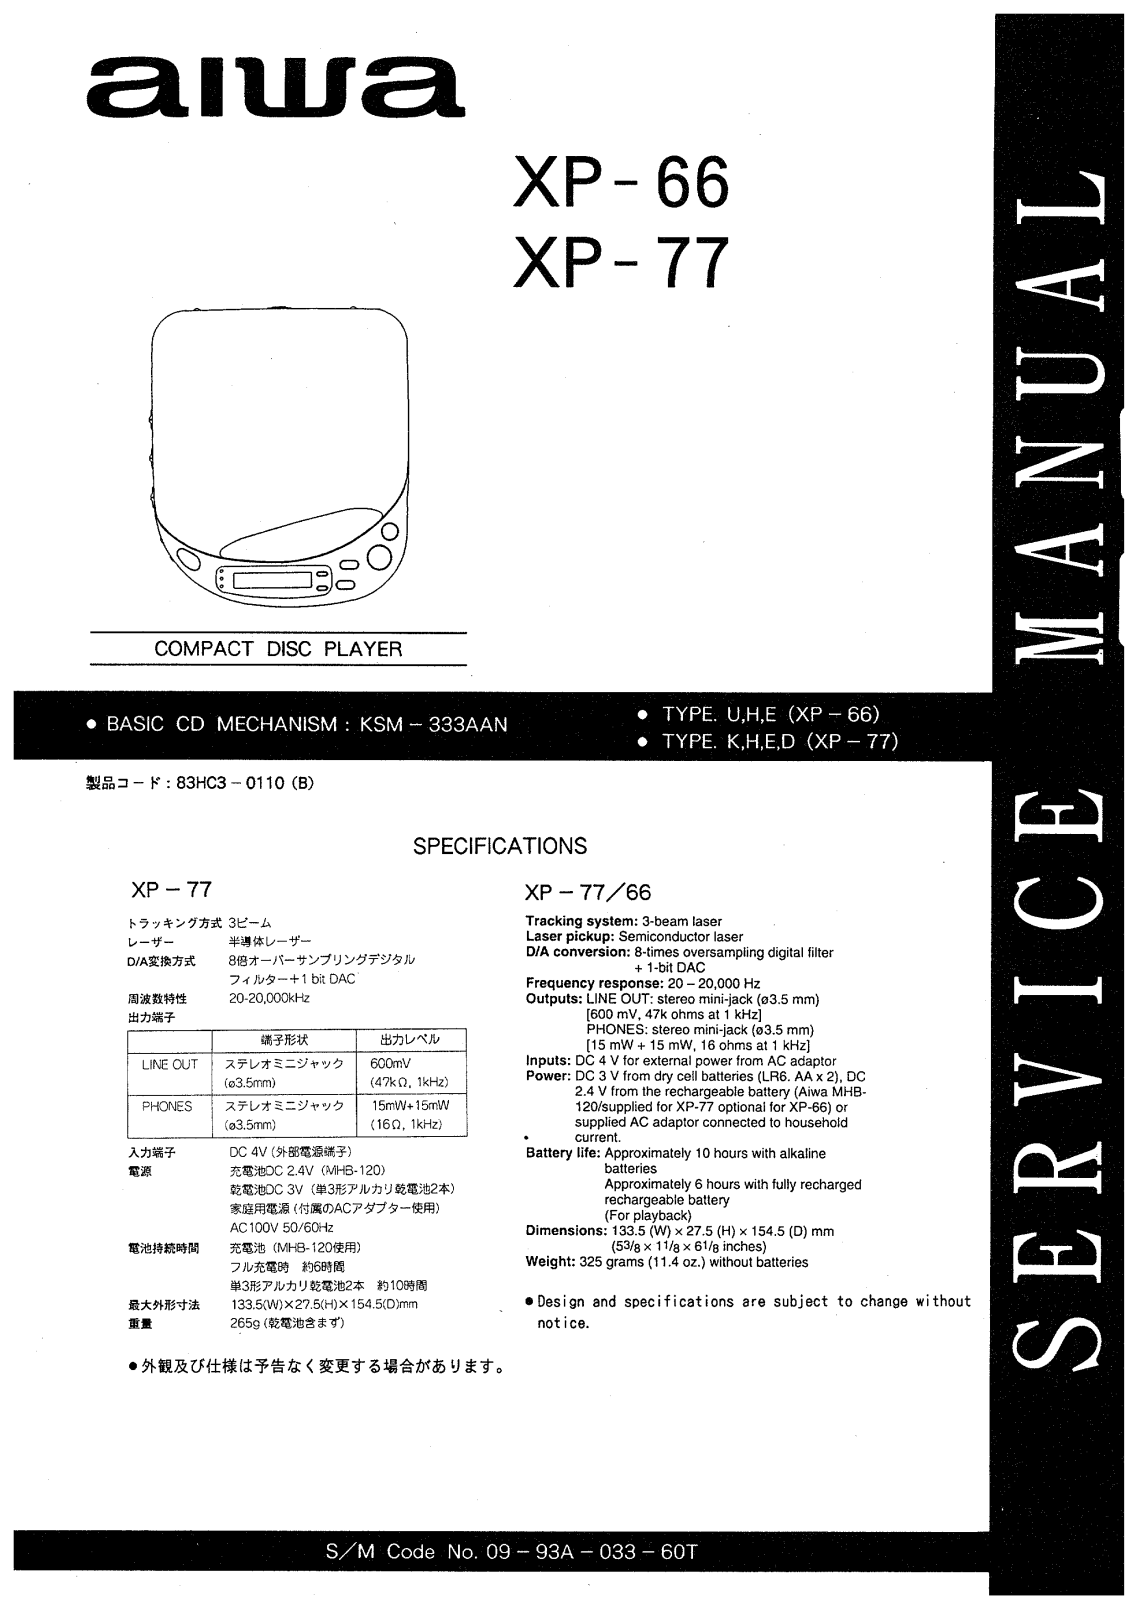 Aiwa xp-66, xp-77 Service Manual